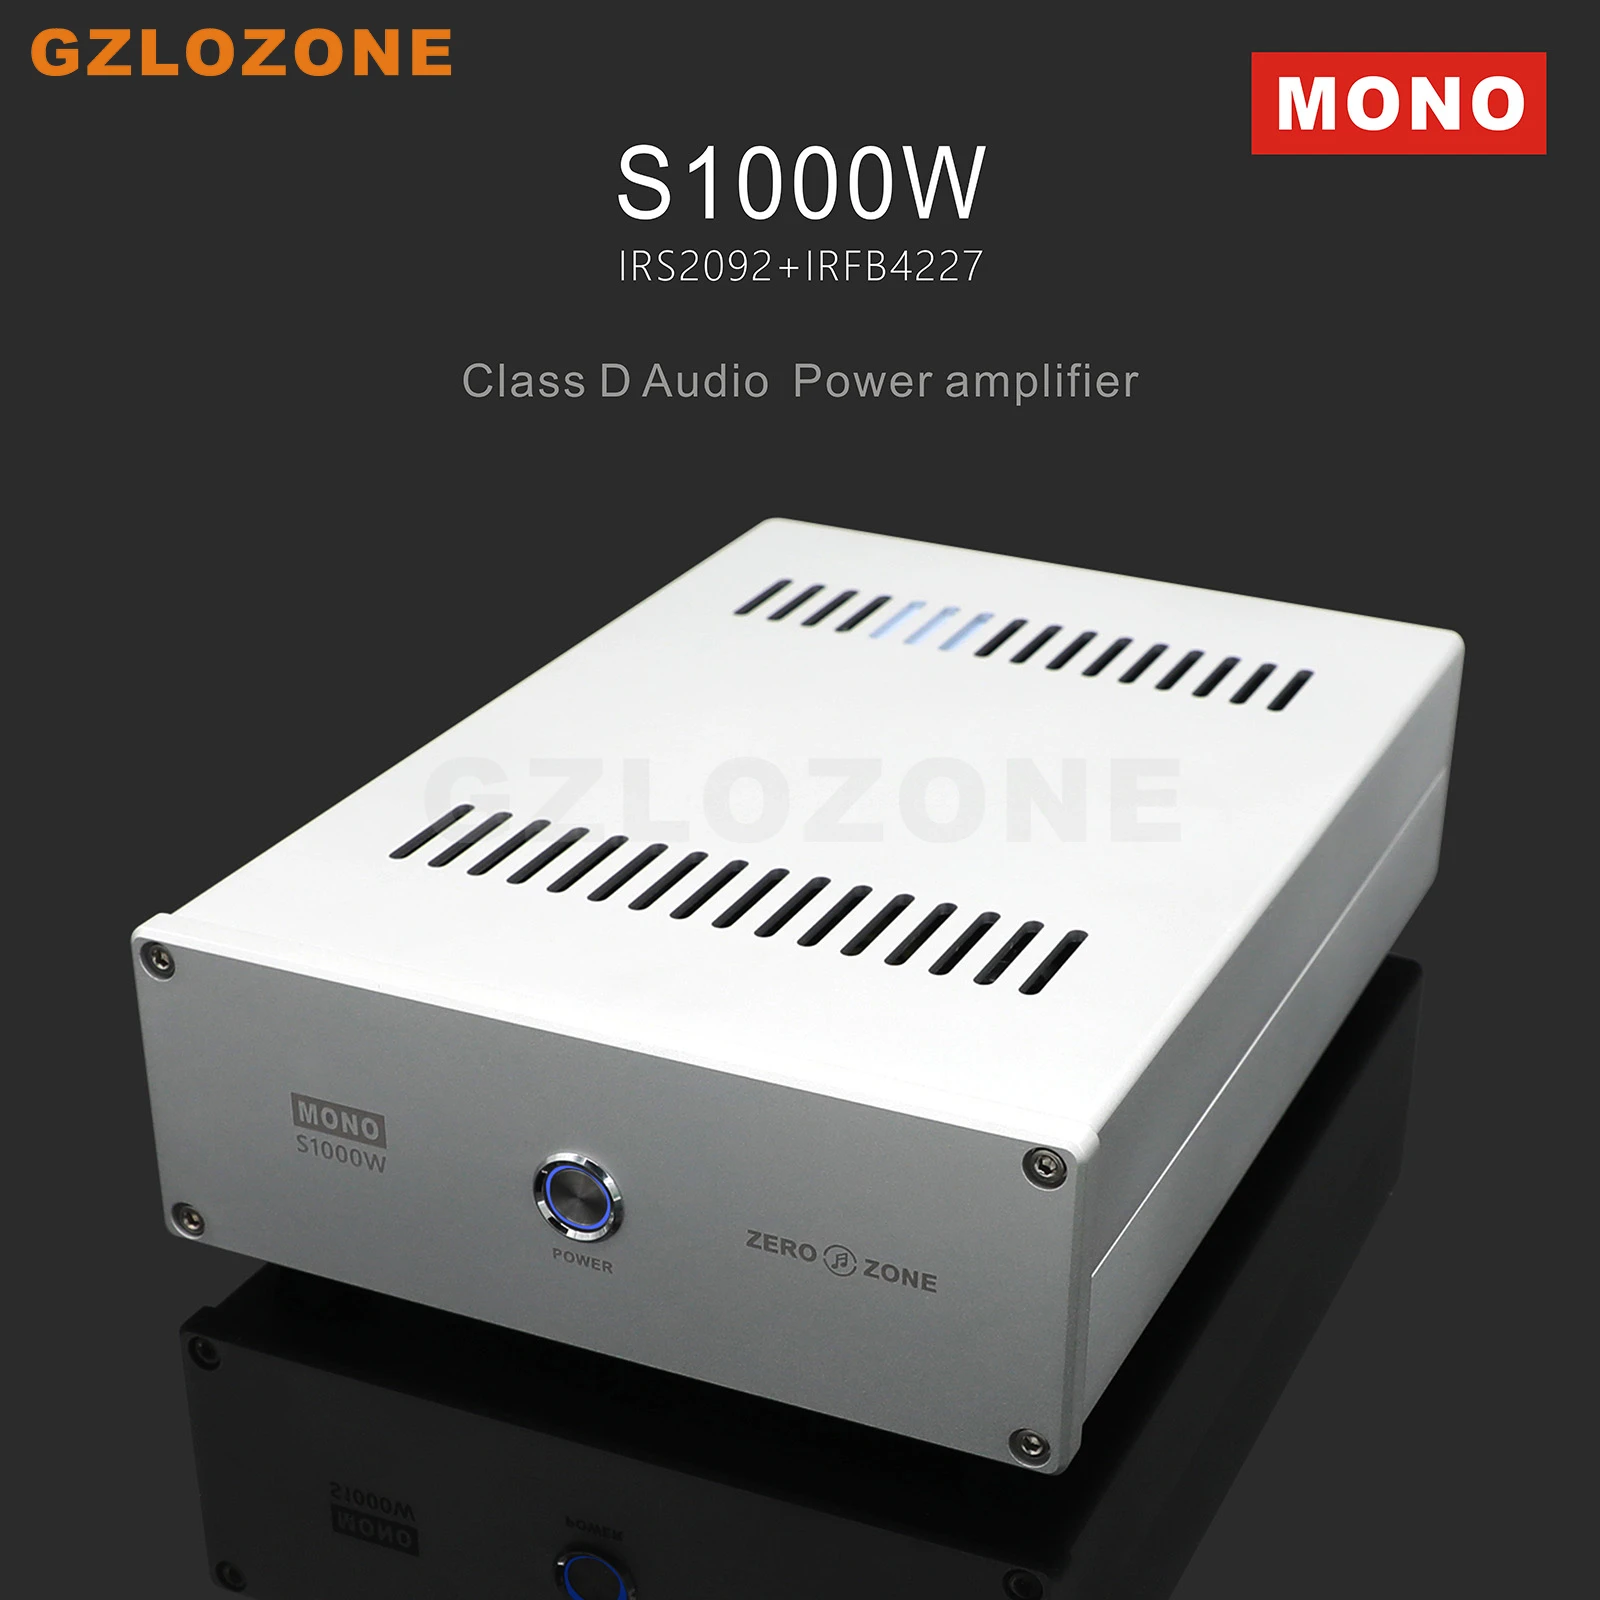 S1000W Mono Clase D amplificador de Potencia de 1000W IRS2092+IRFB4227 amplificador de Audio - 0